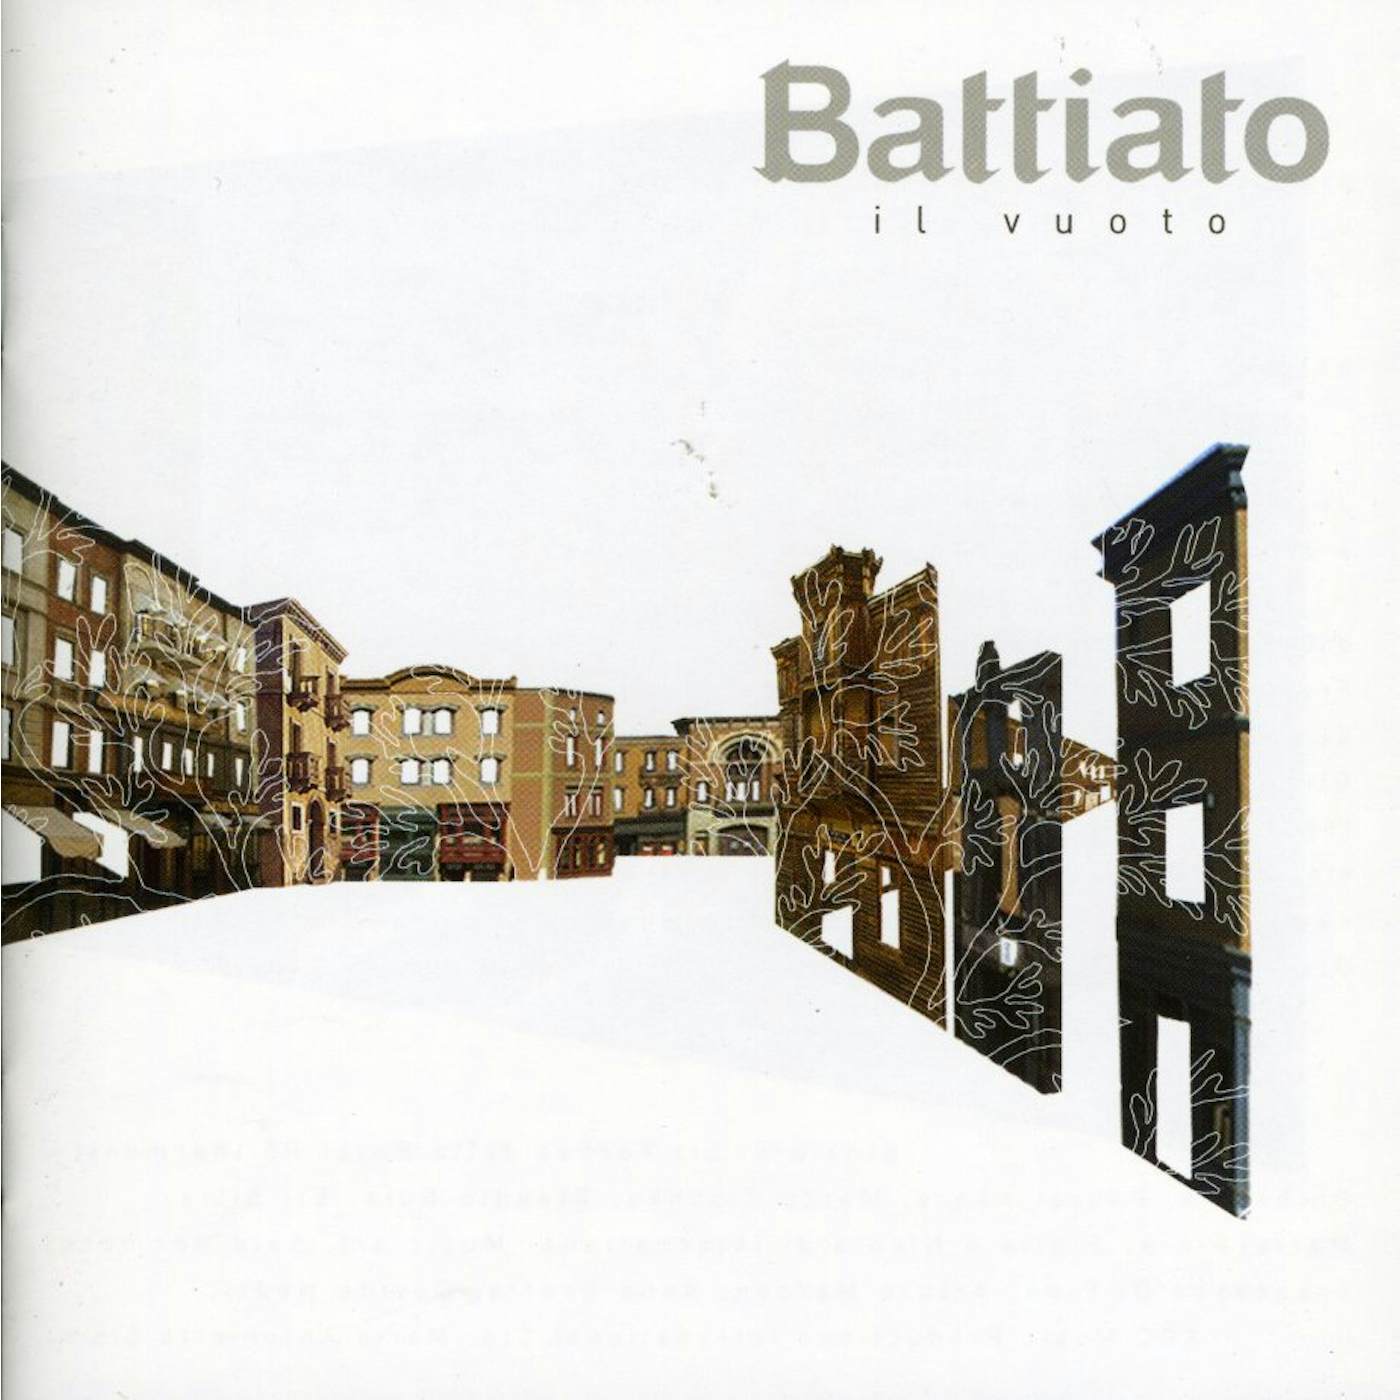 Franco Battiato IL VUOTO CD